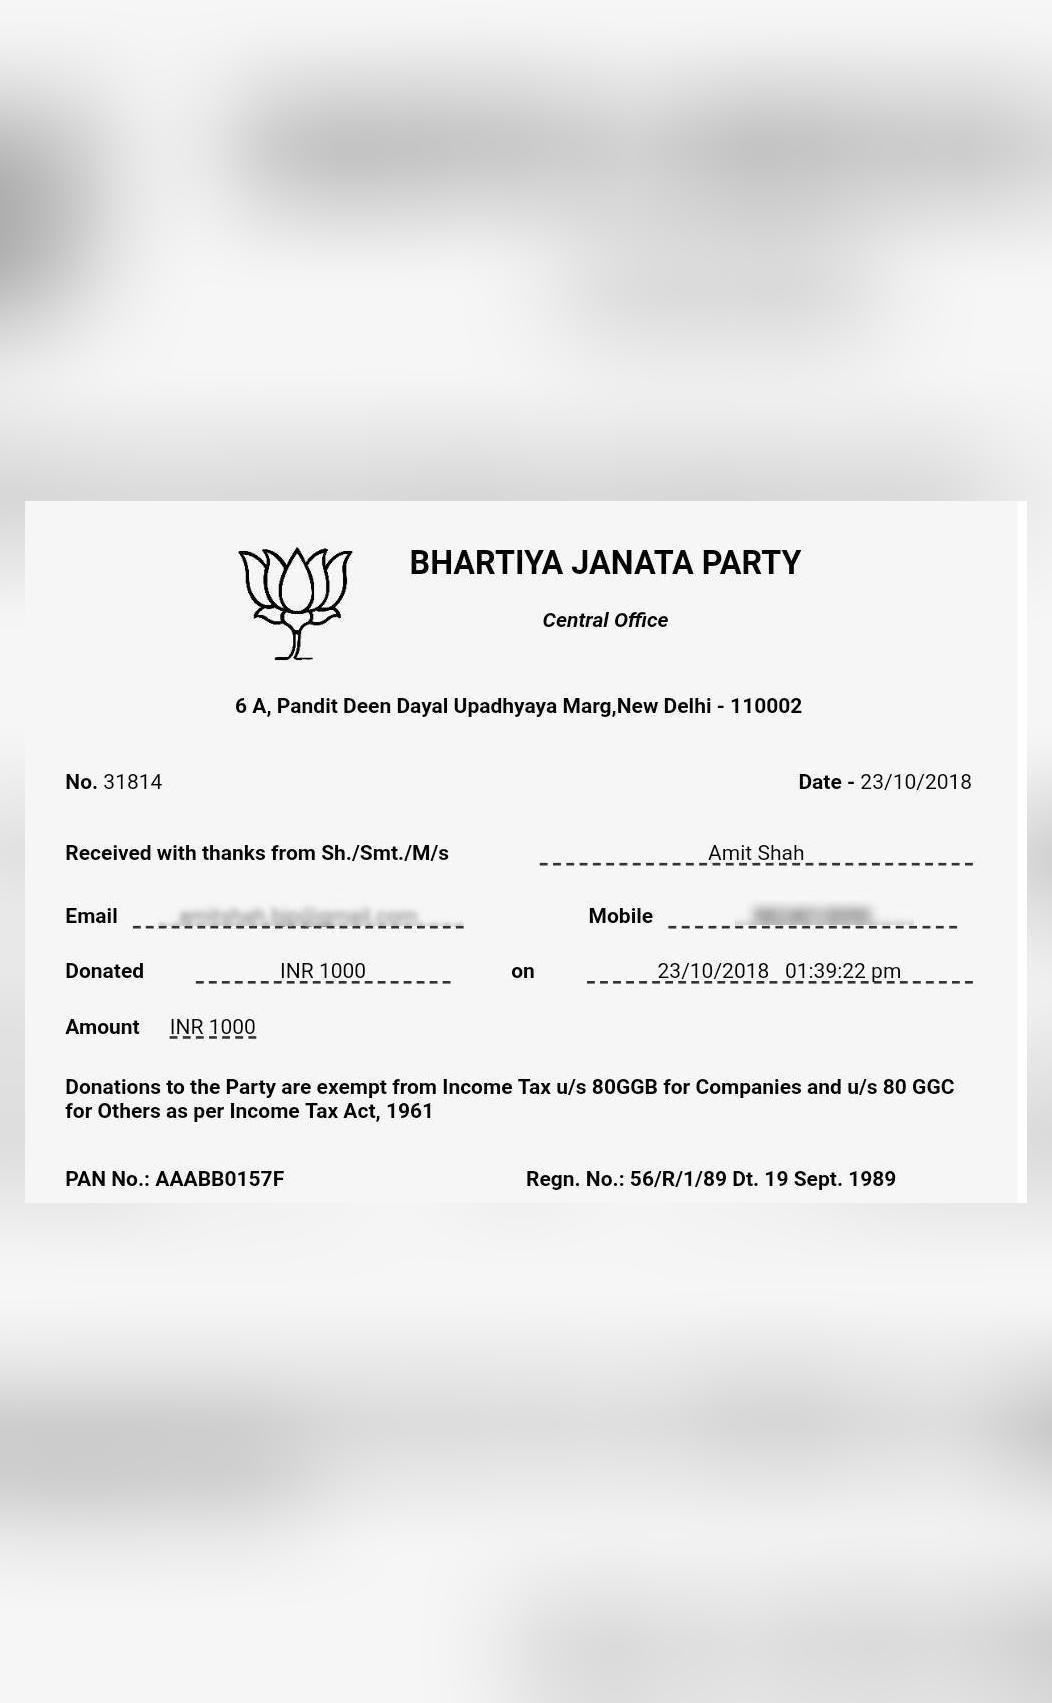 bjp-prez-amit-shah-donates-1-000-to-own-party-shares-receipt